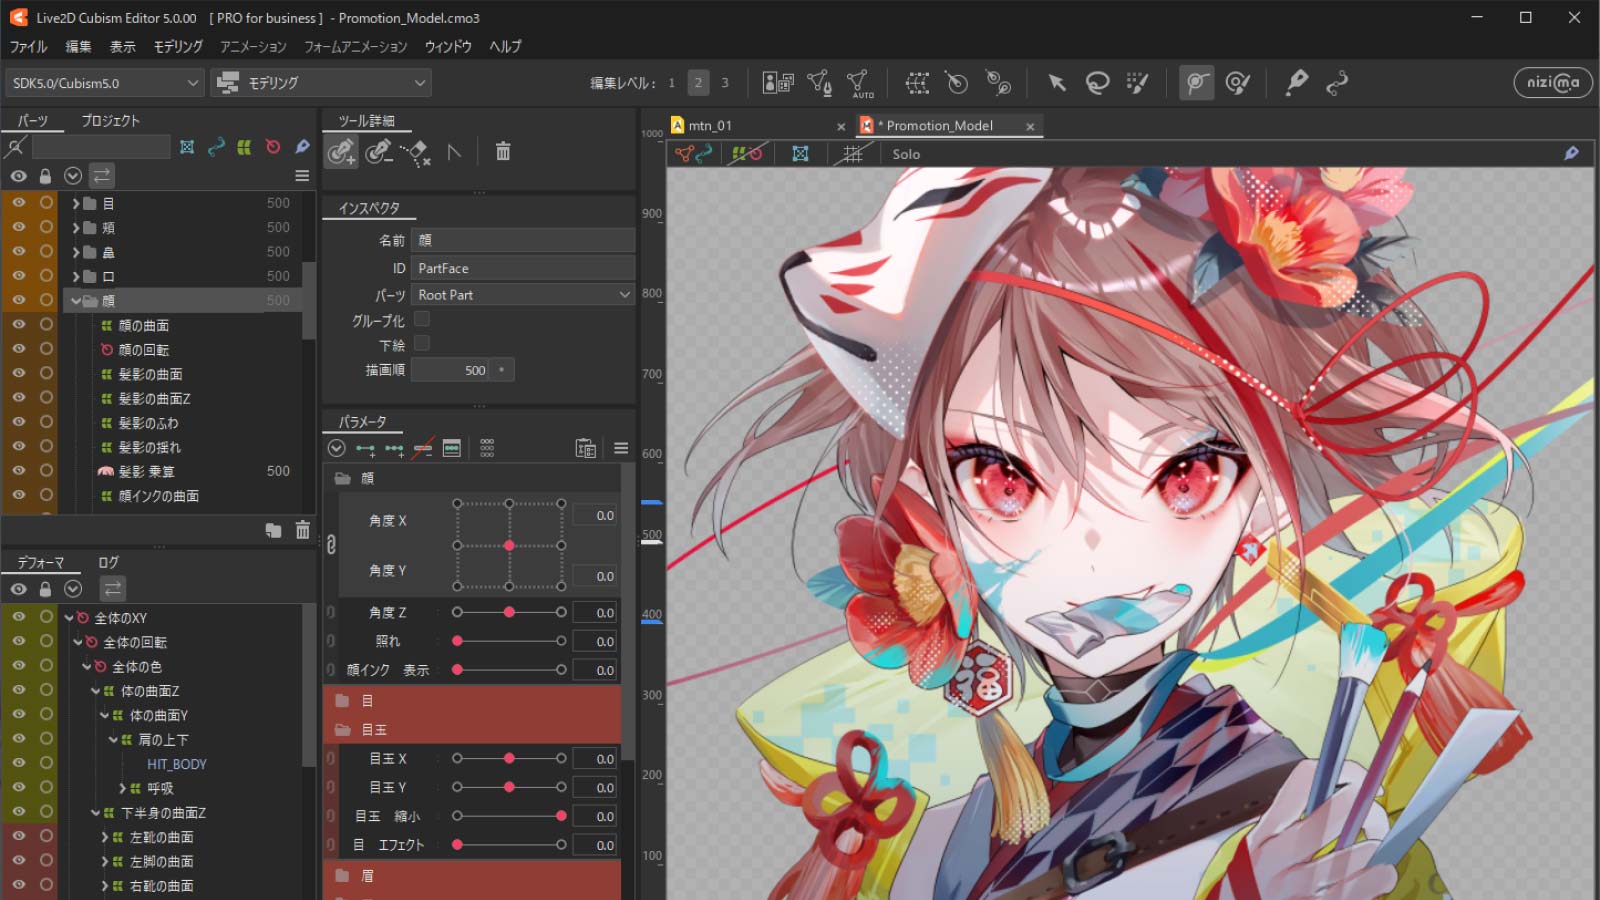 Live2D Cubism Editor 5.0.00 동작 보증